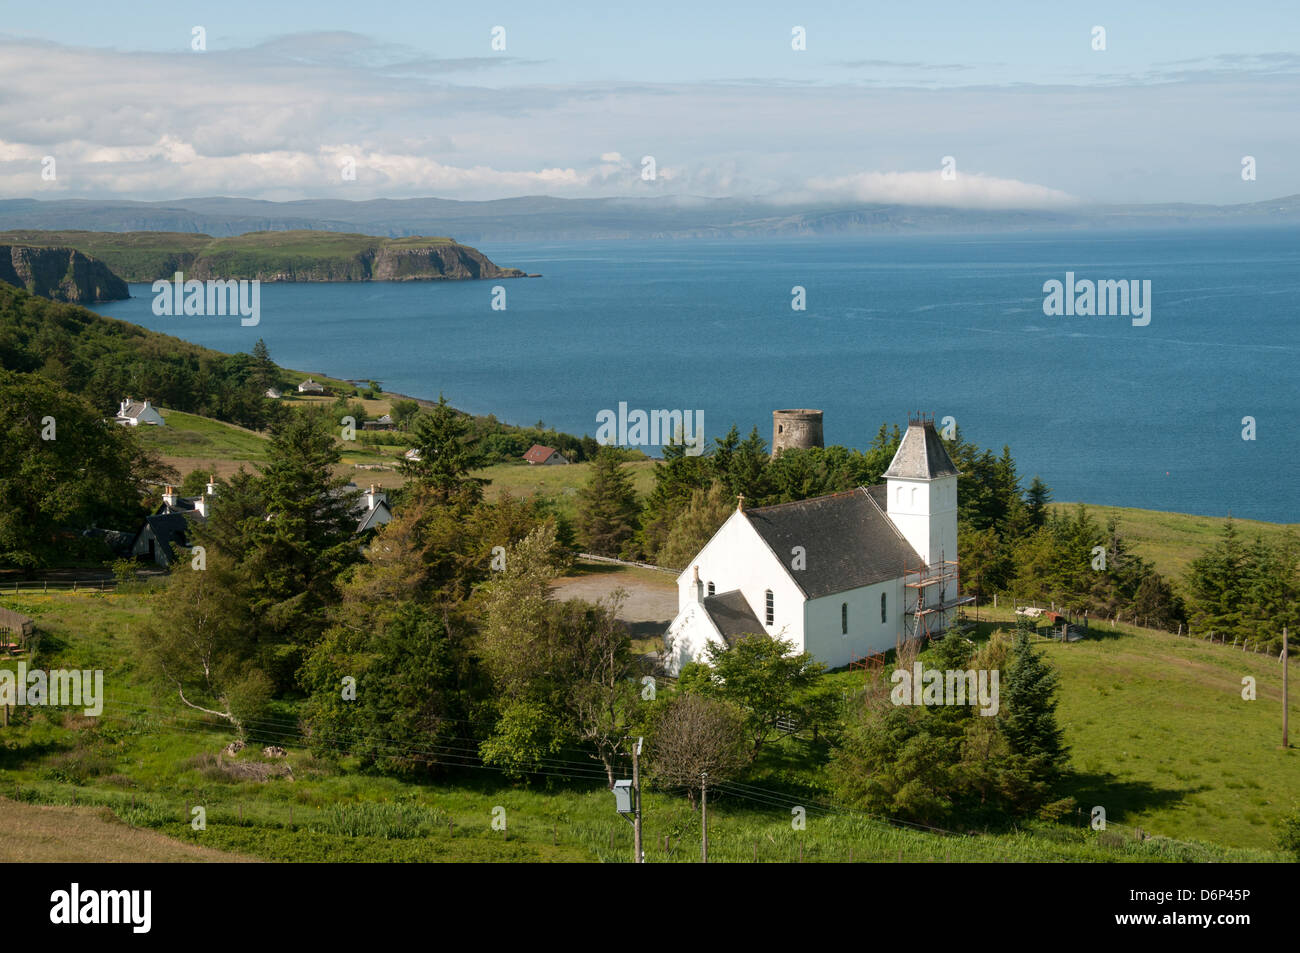 Uig Bay, Trotternish, Isle of Skye, Scotland, UK Stock Photo